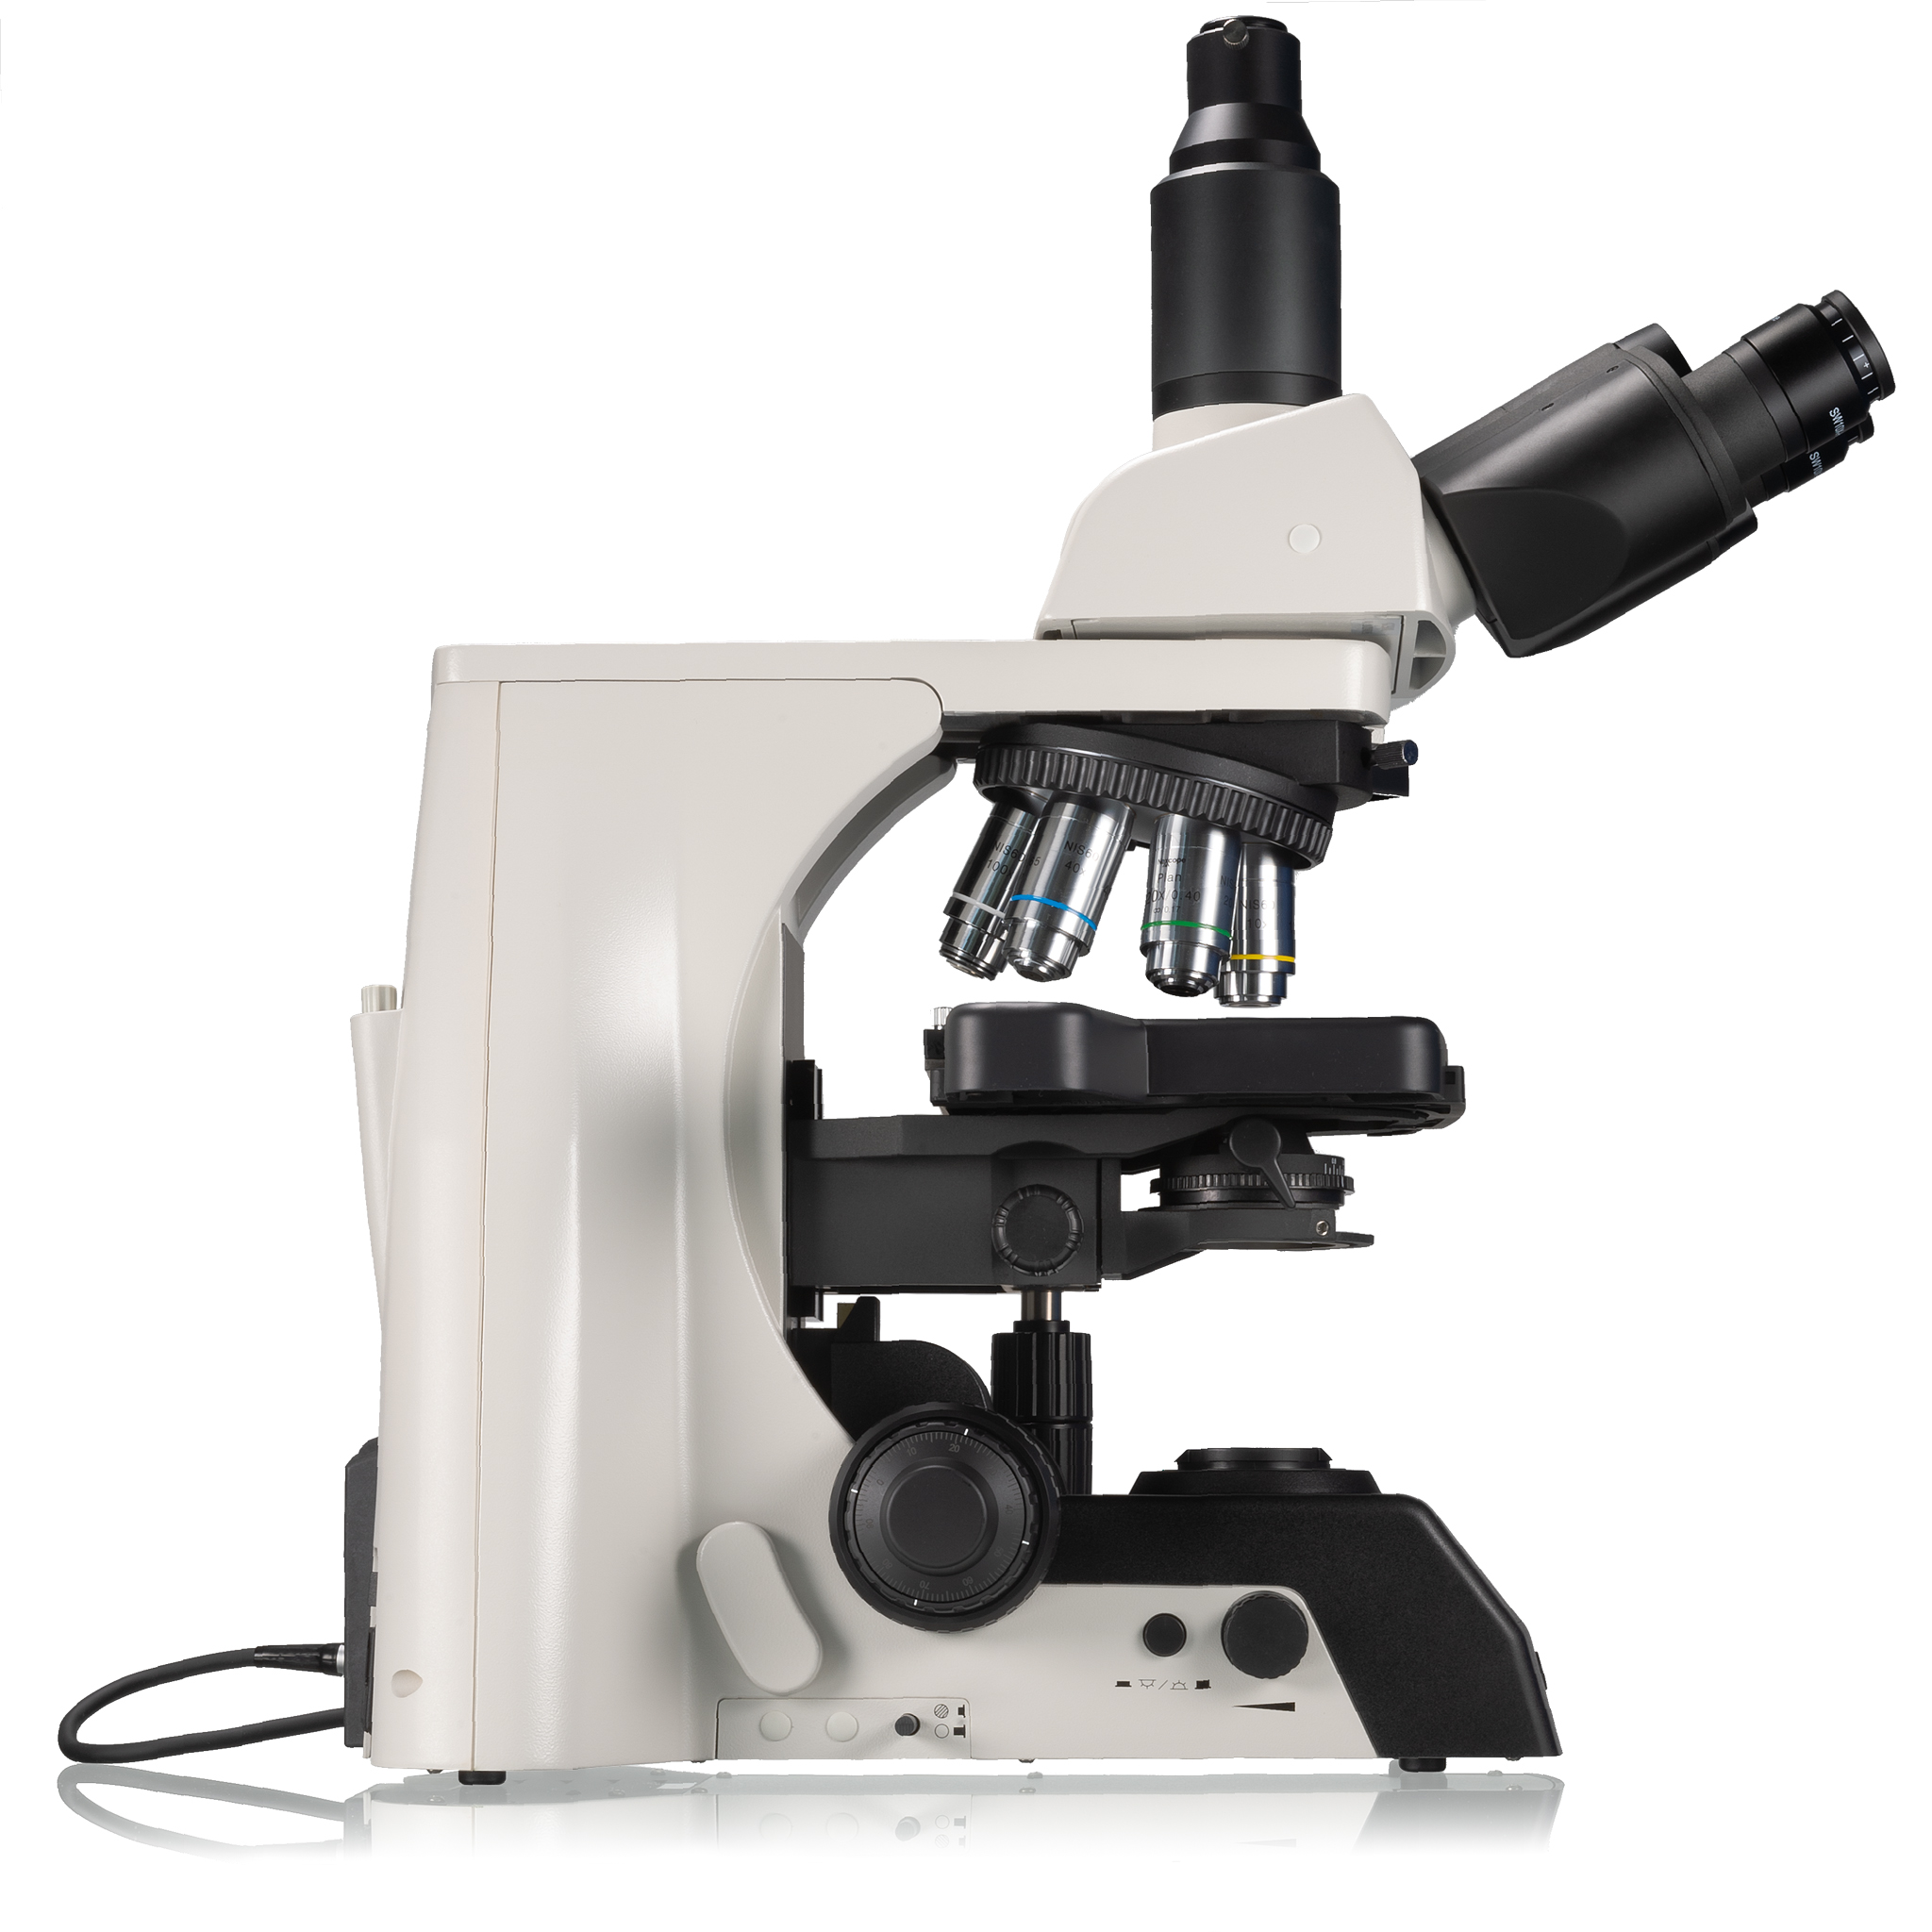 Nexcope NE910 microscope de laboratoire professionnel avec une grande capacité d'évolution